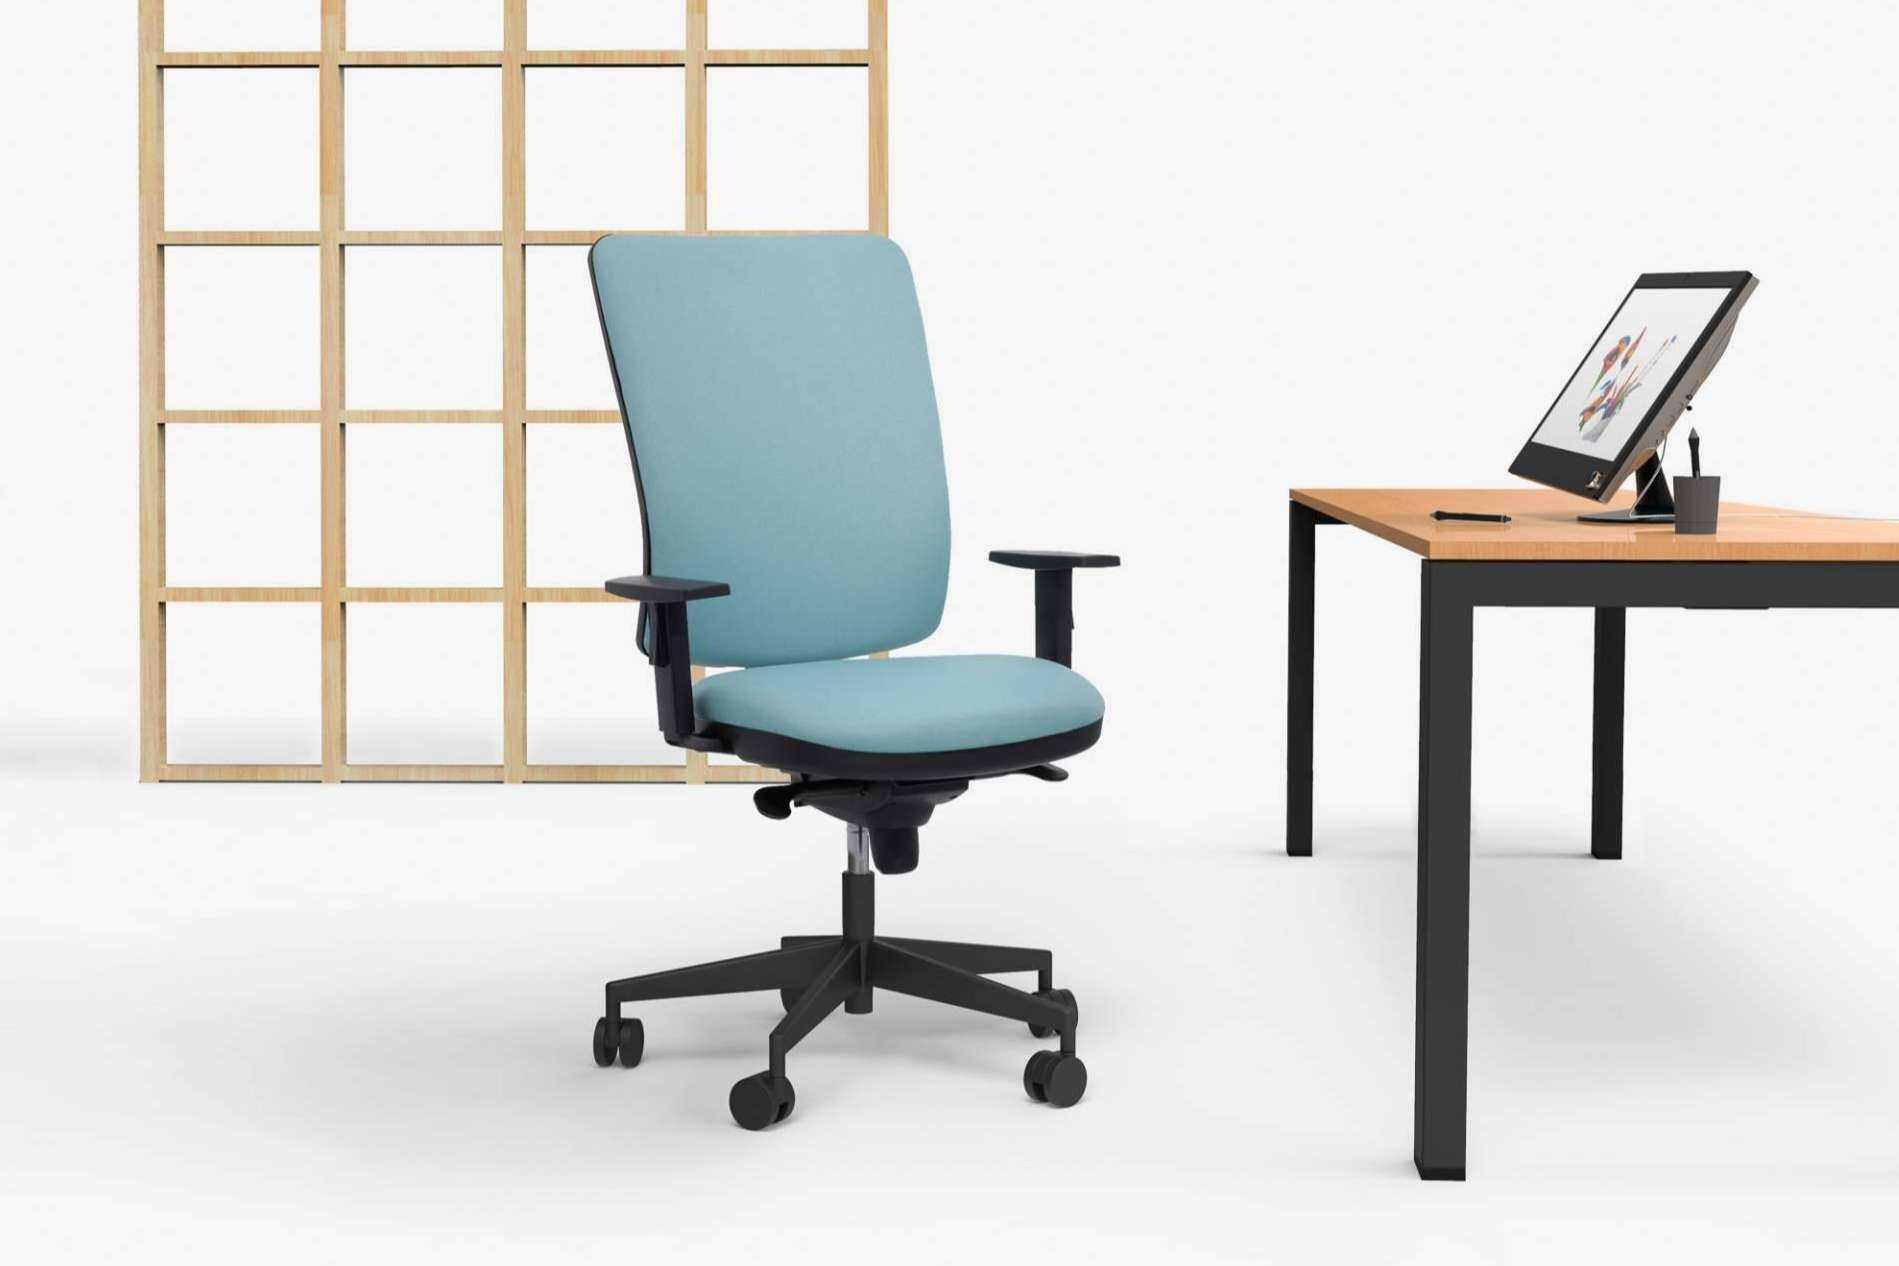  Jornadas de trabajo placenteras con las sillas de oficina operativas ergonómicas de Office Deco 